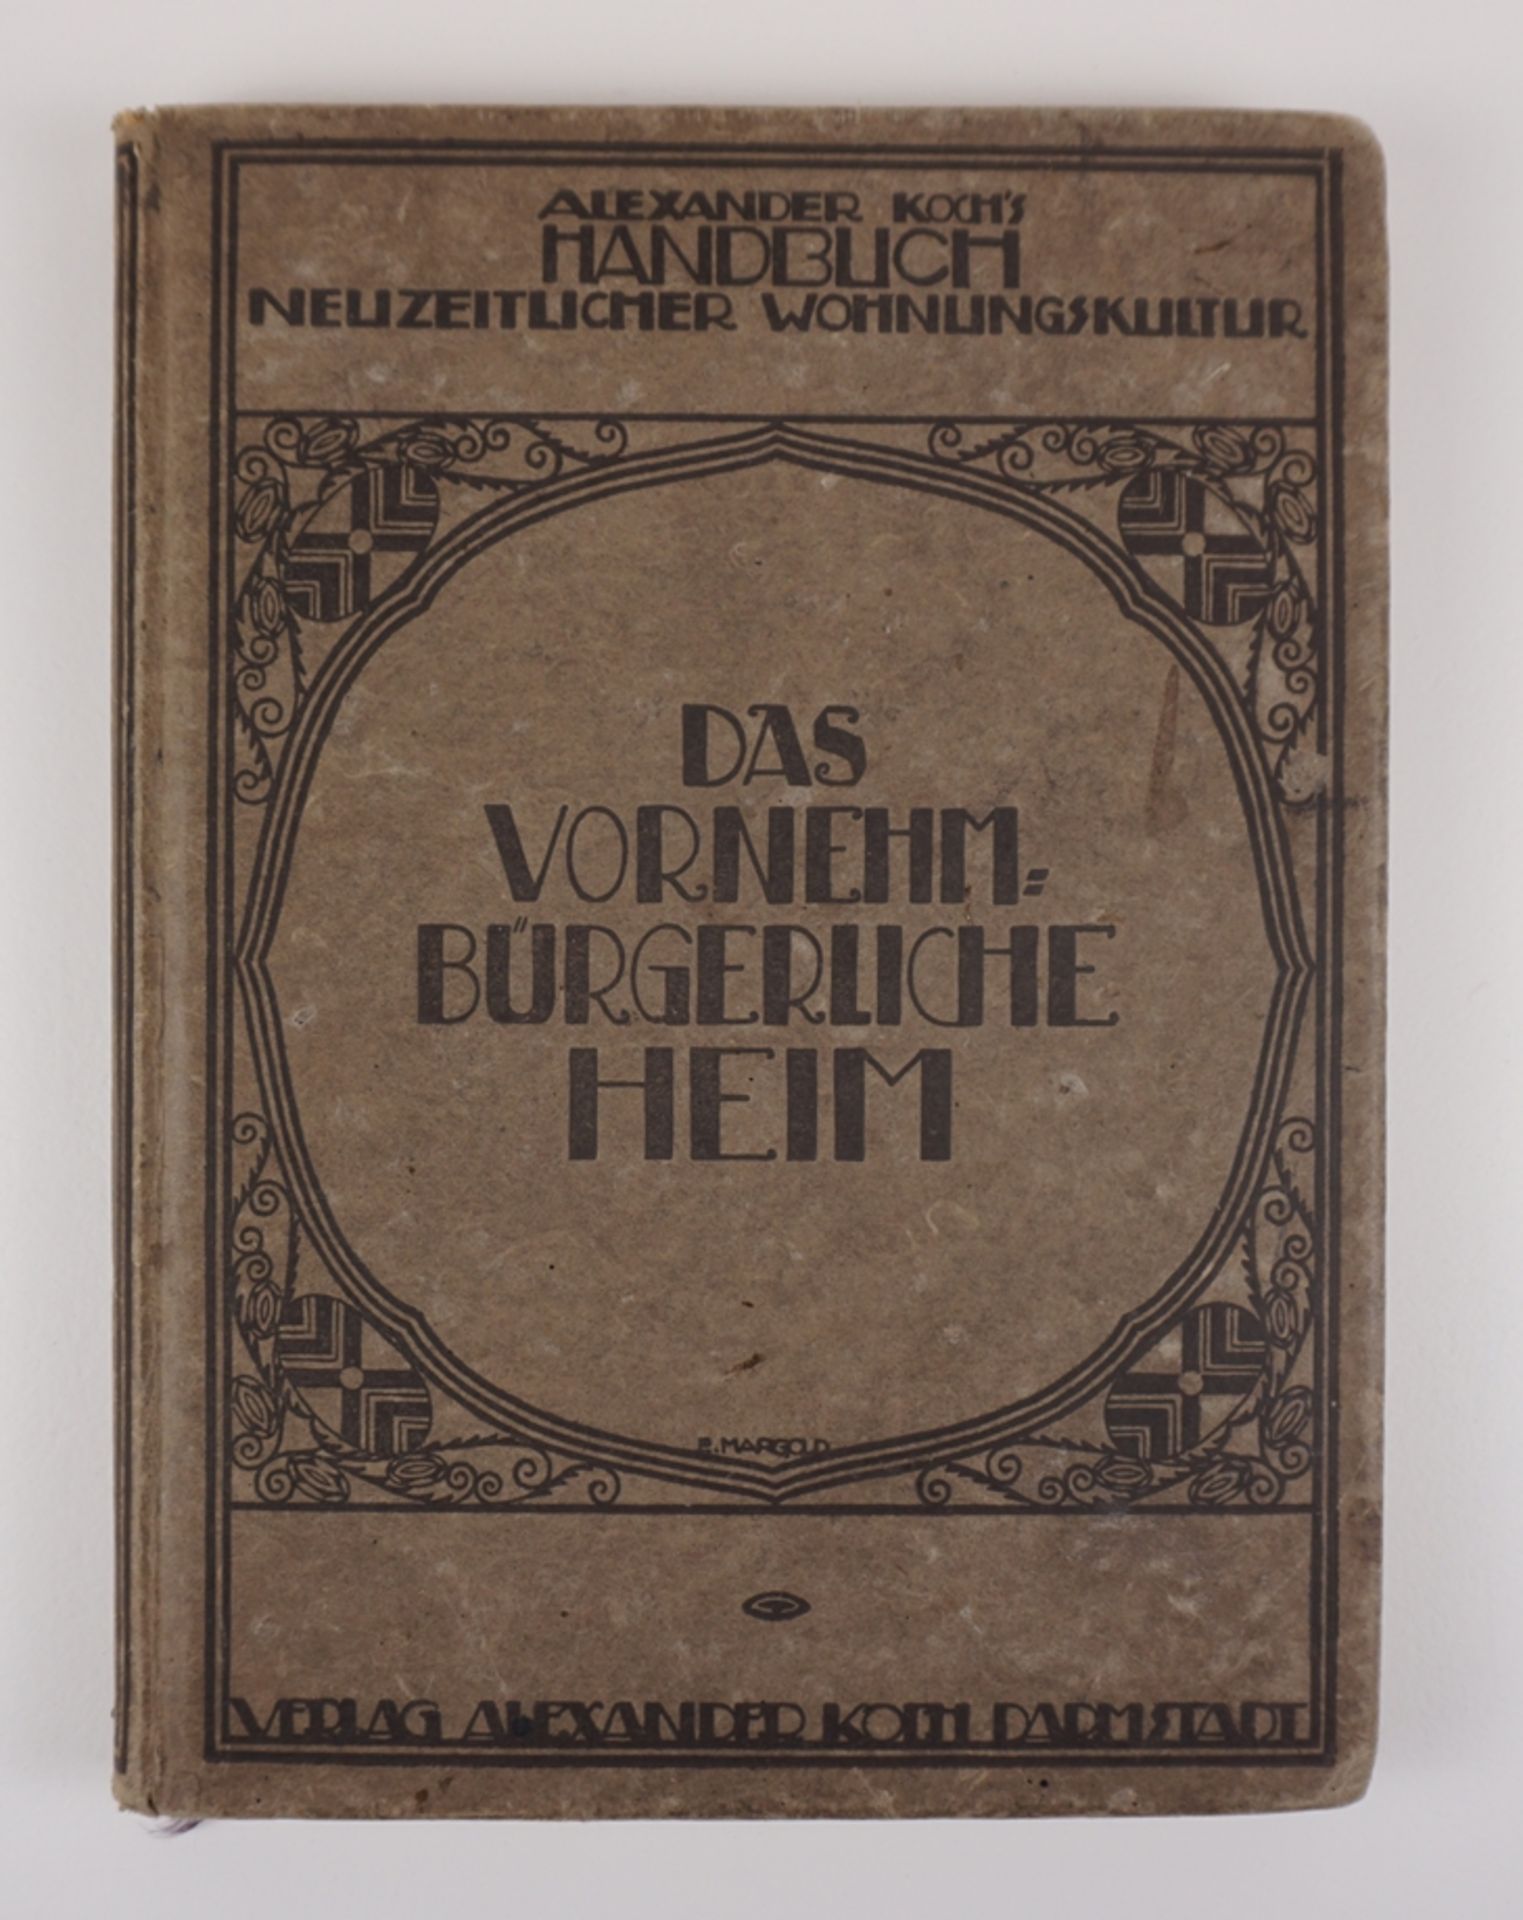 Alexander Koch's Handbuch neuzeitlicher Wohnungskultur, Band: Das vornehme bürgerliche Heim, 1917